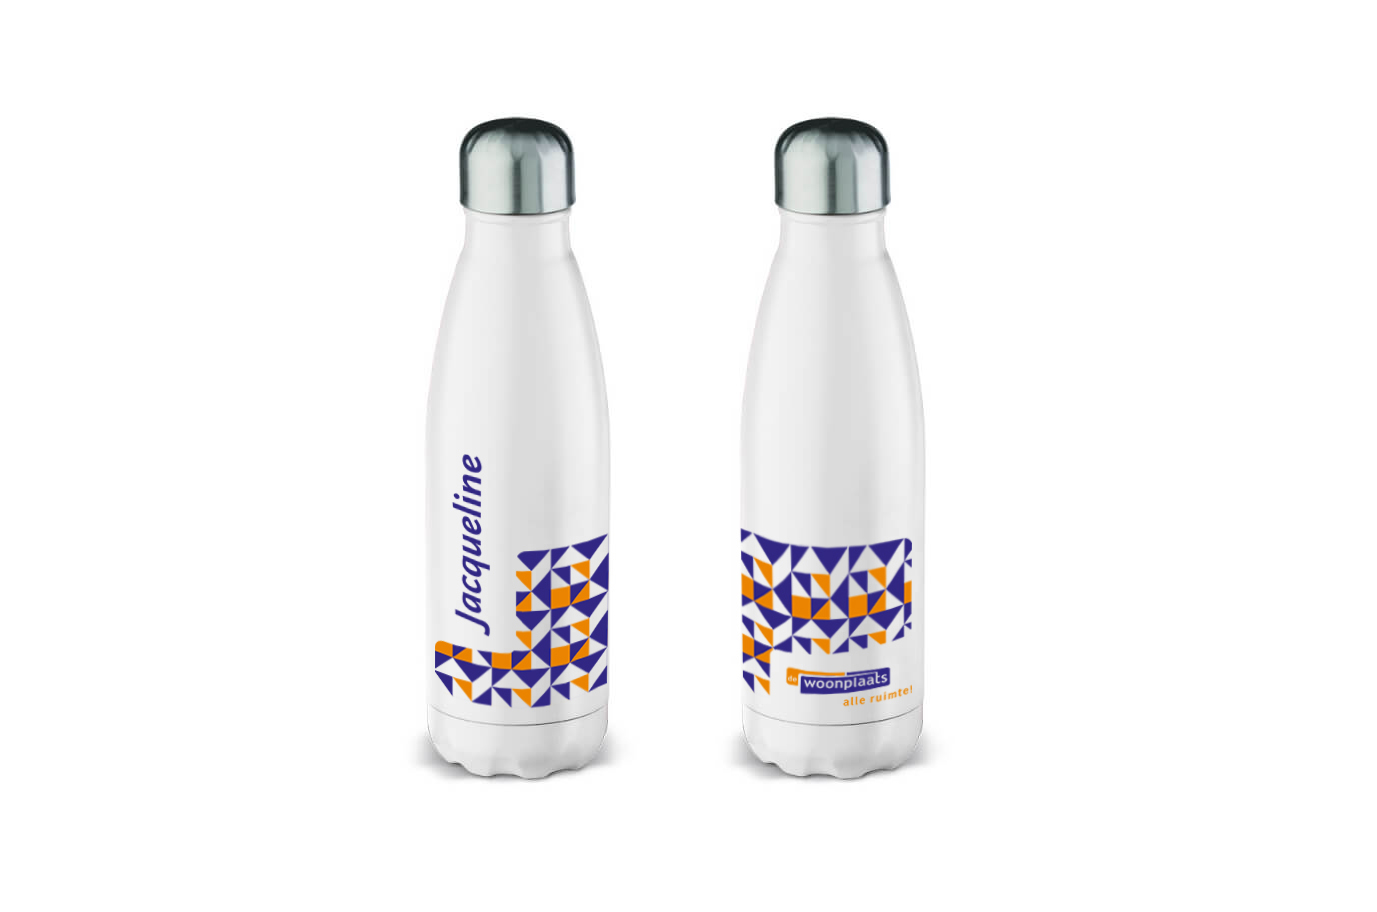 Twee witte drinkflessen met paarse en oranje elementen uit het logo van De Woonplaats, op één fles staat de naam Jacqueline